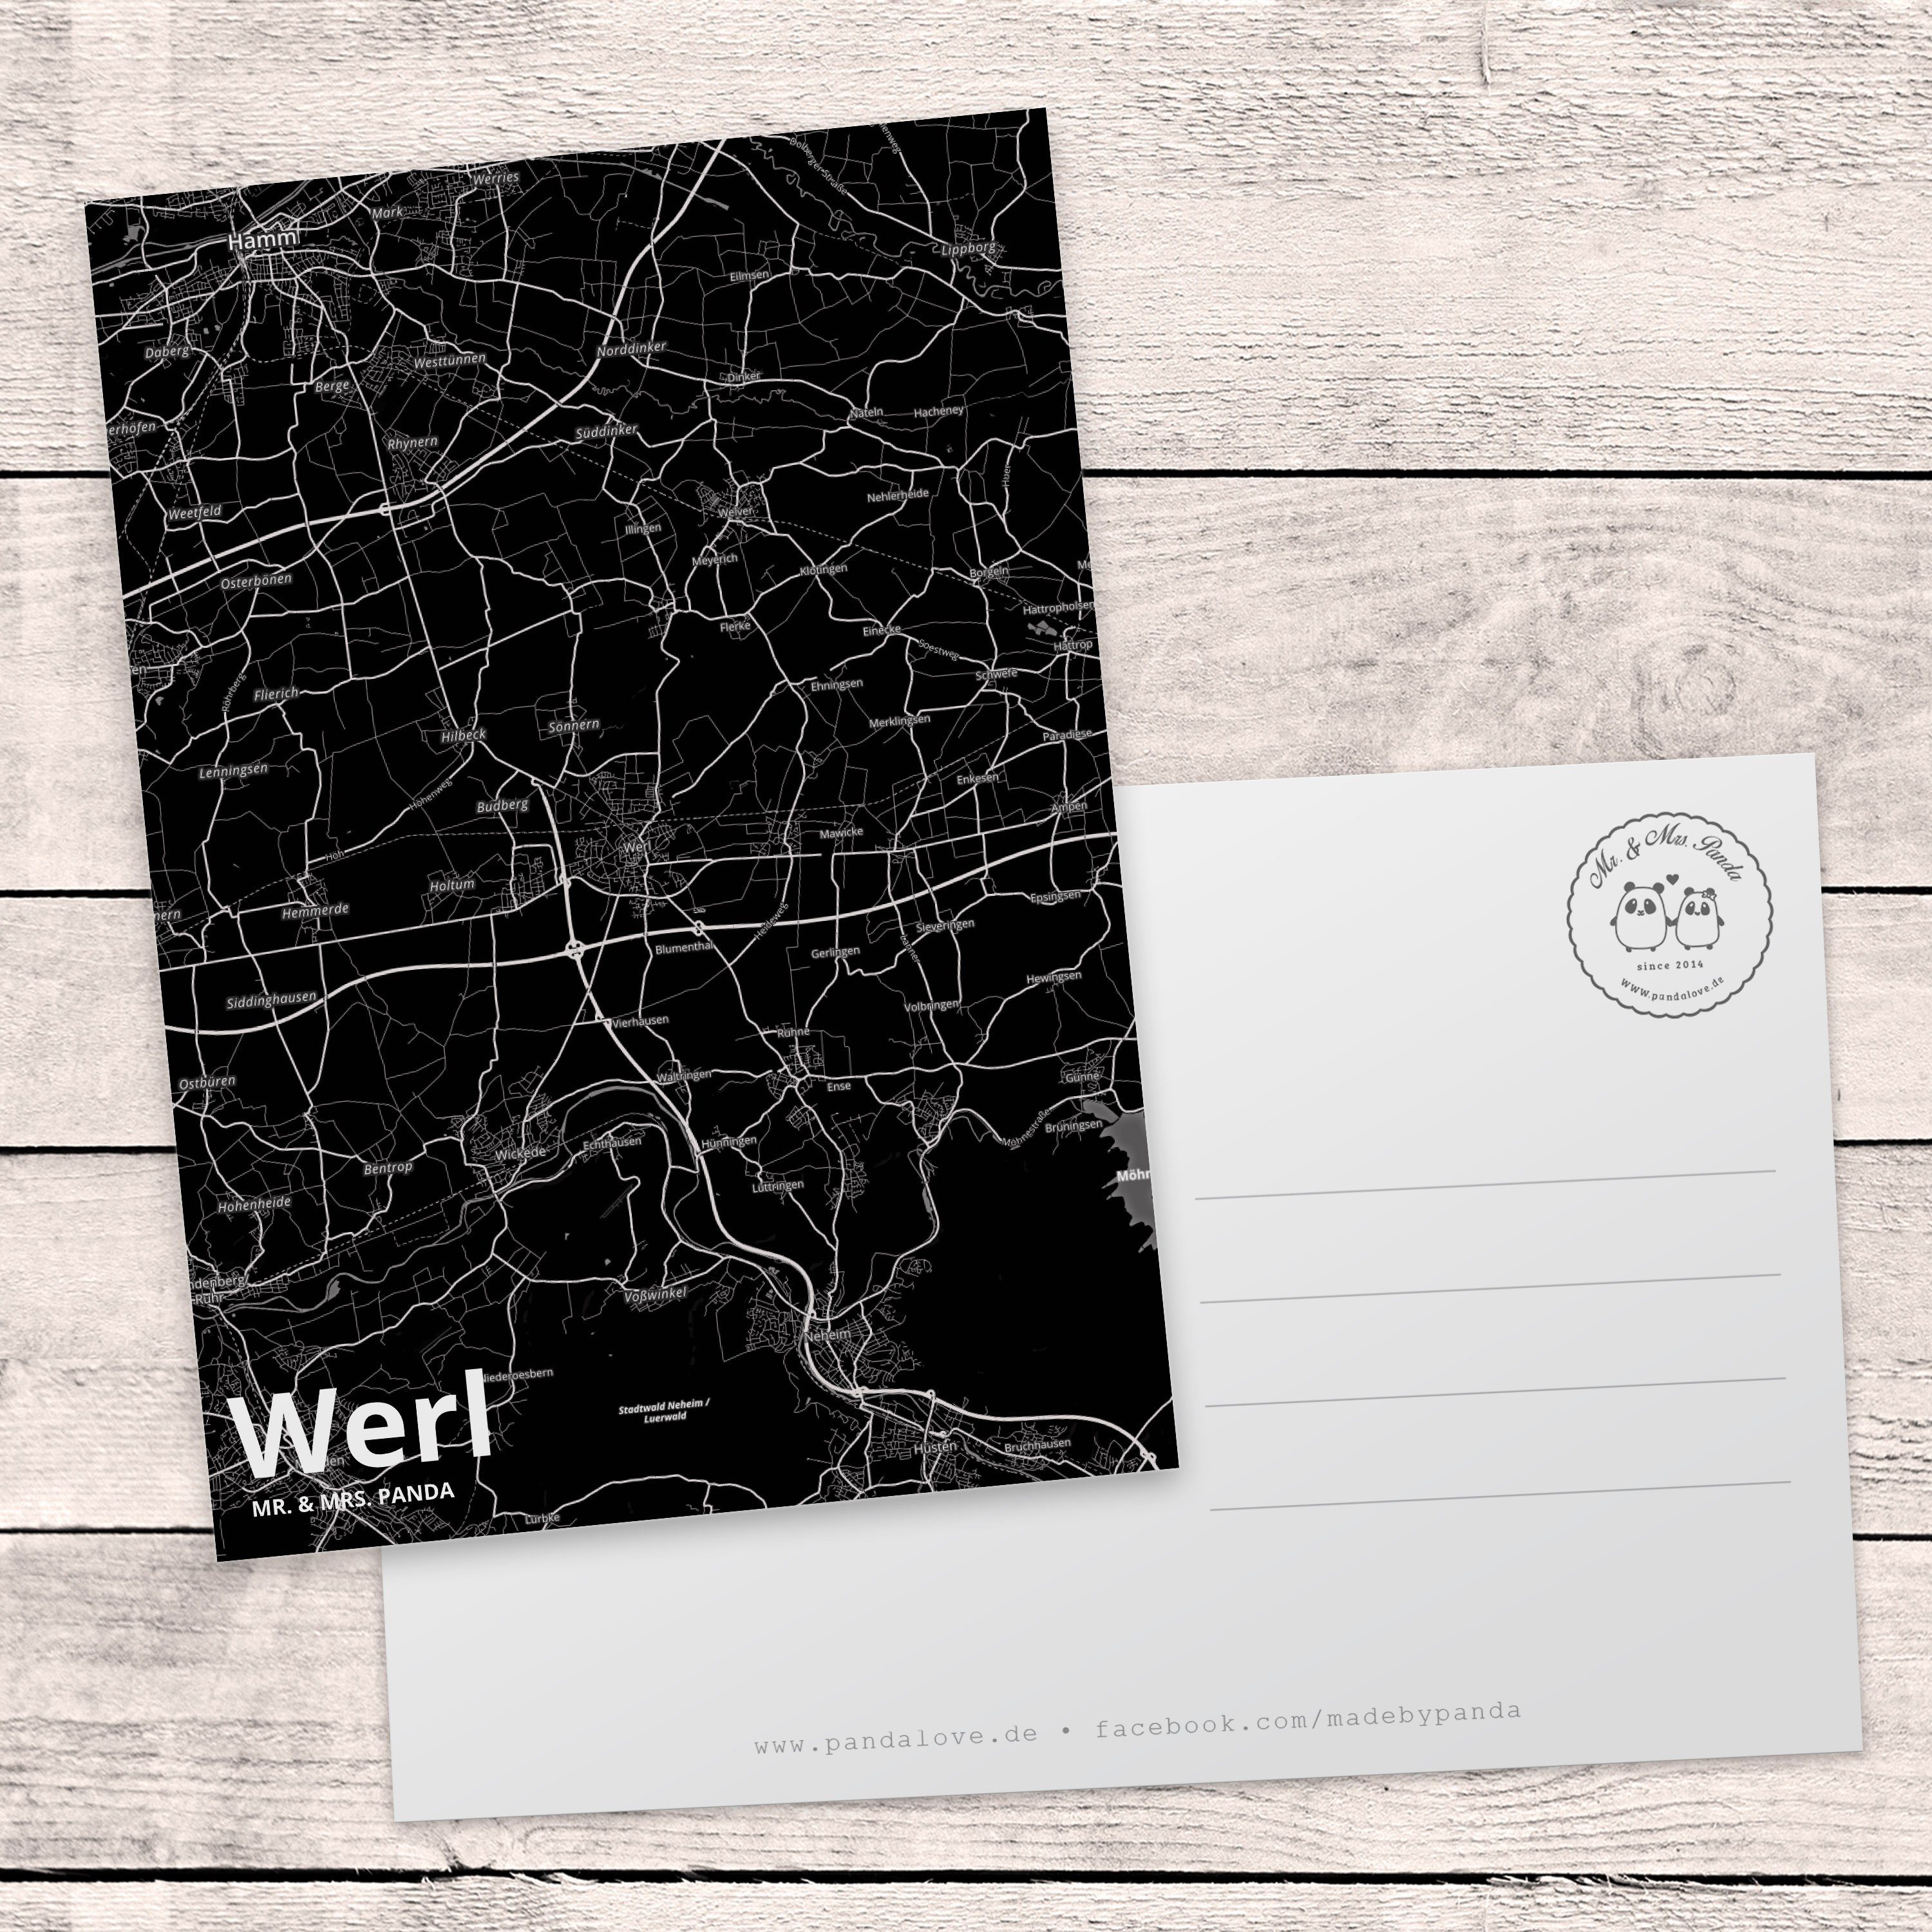 Geburtstagskarte, Werl Stadt, Panda Mrs. Mr. Geschenkk & Einladung, Karte, Geschenk, Postkarte -